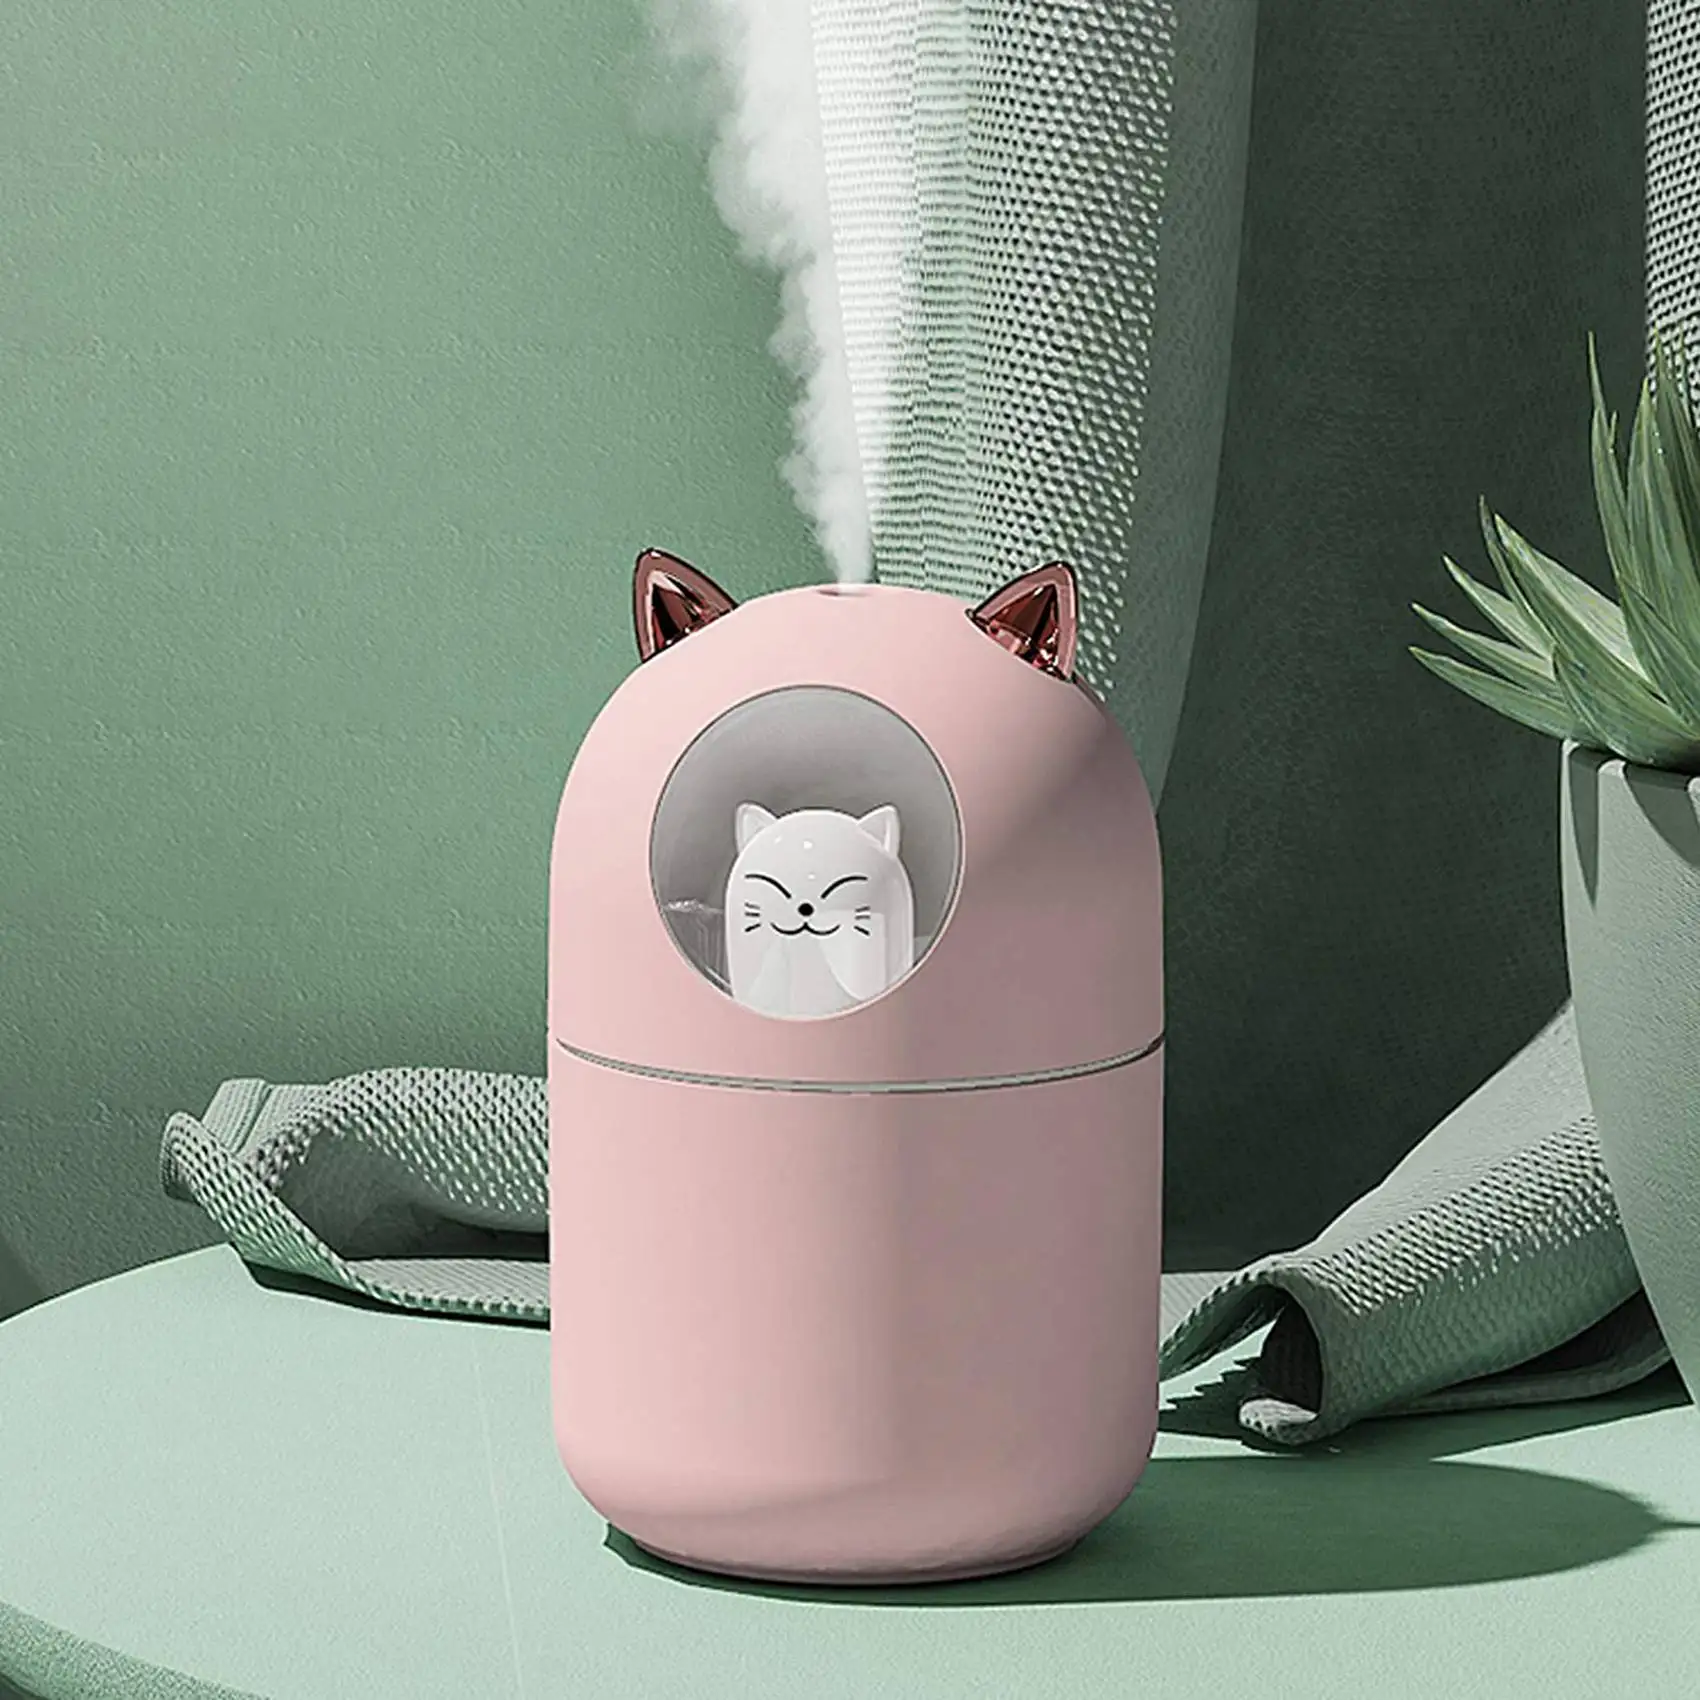 Увлажнитель воздуха Cute Cat Cool Mist для дома, Кошачий Ночник, Необходимый Чистый Воздух для детской Комнаты, Легкая очистка, Бесшумная работа, Розовый